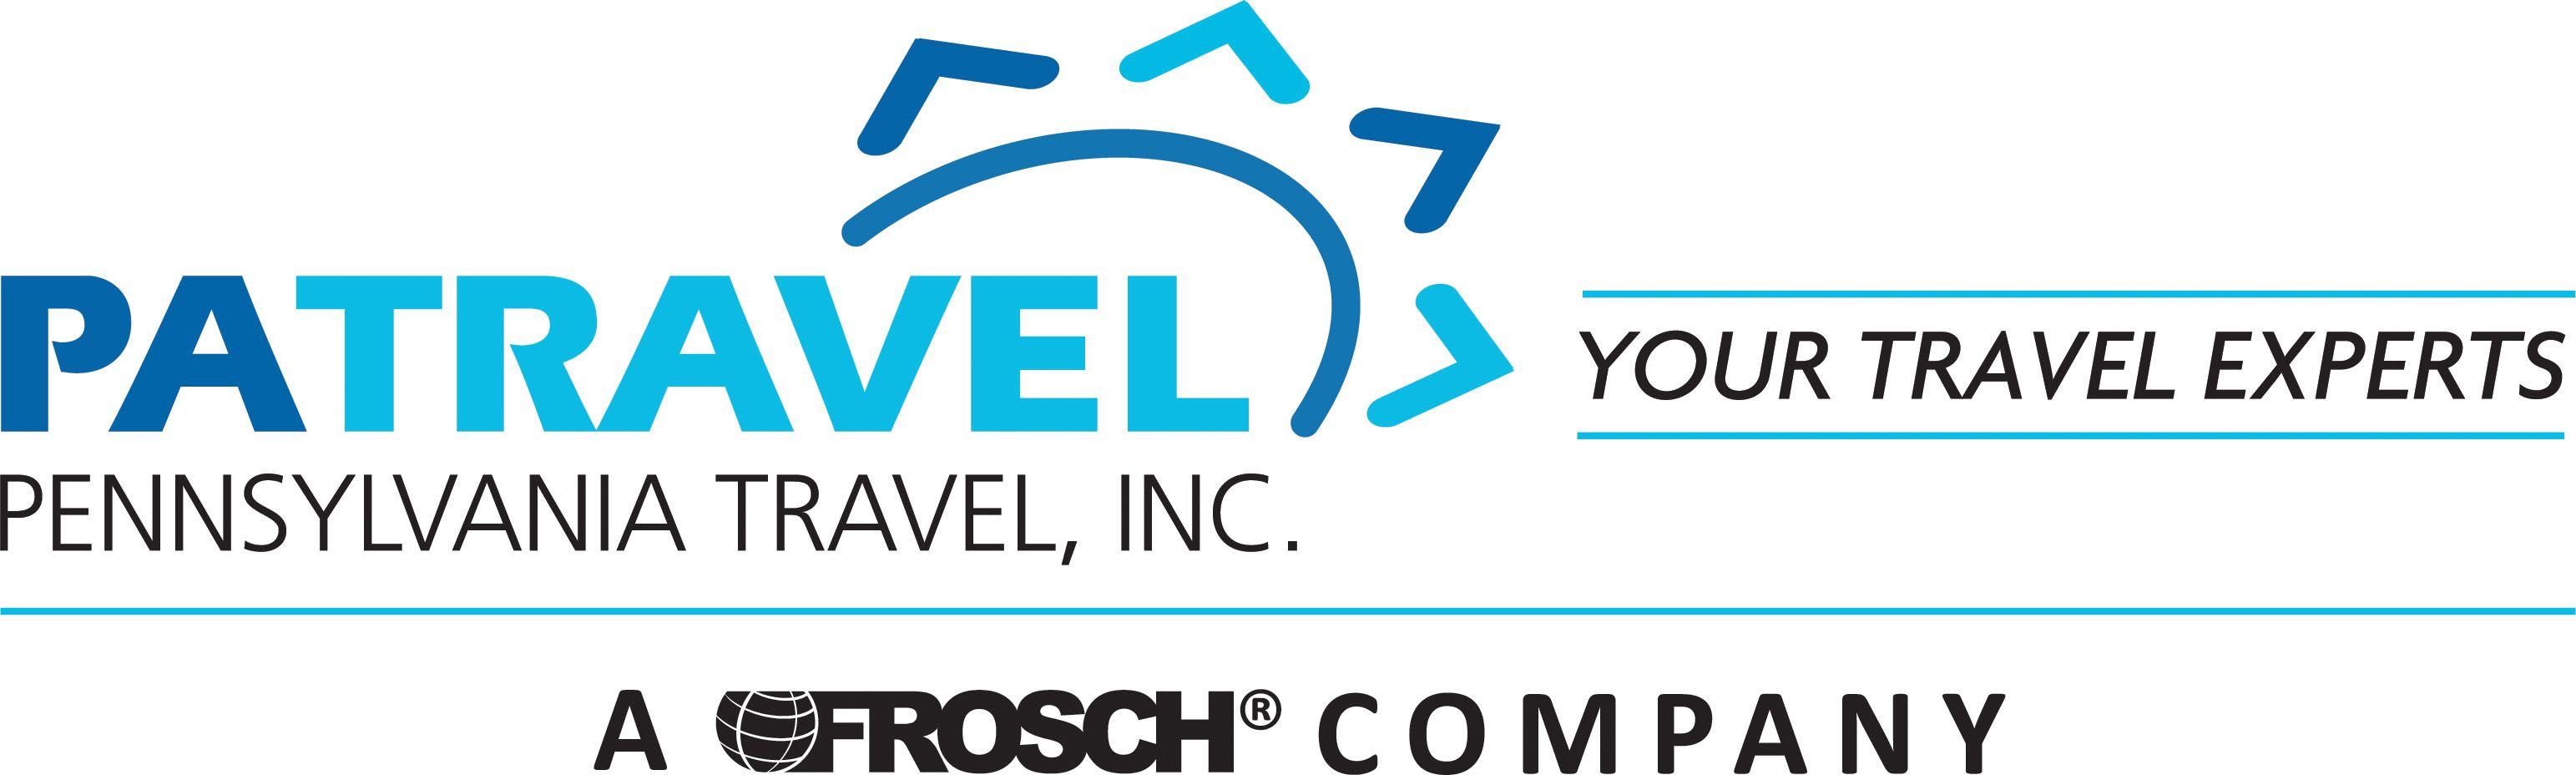 Travel.com Logo - Home - PATravel